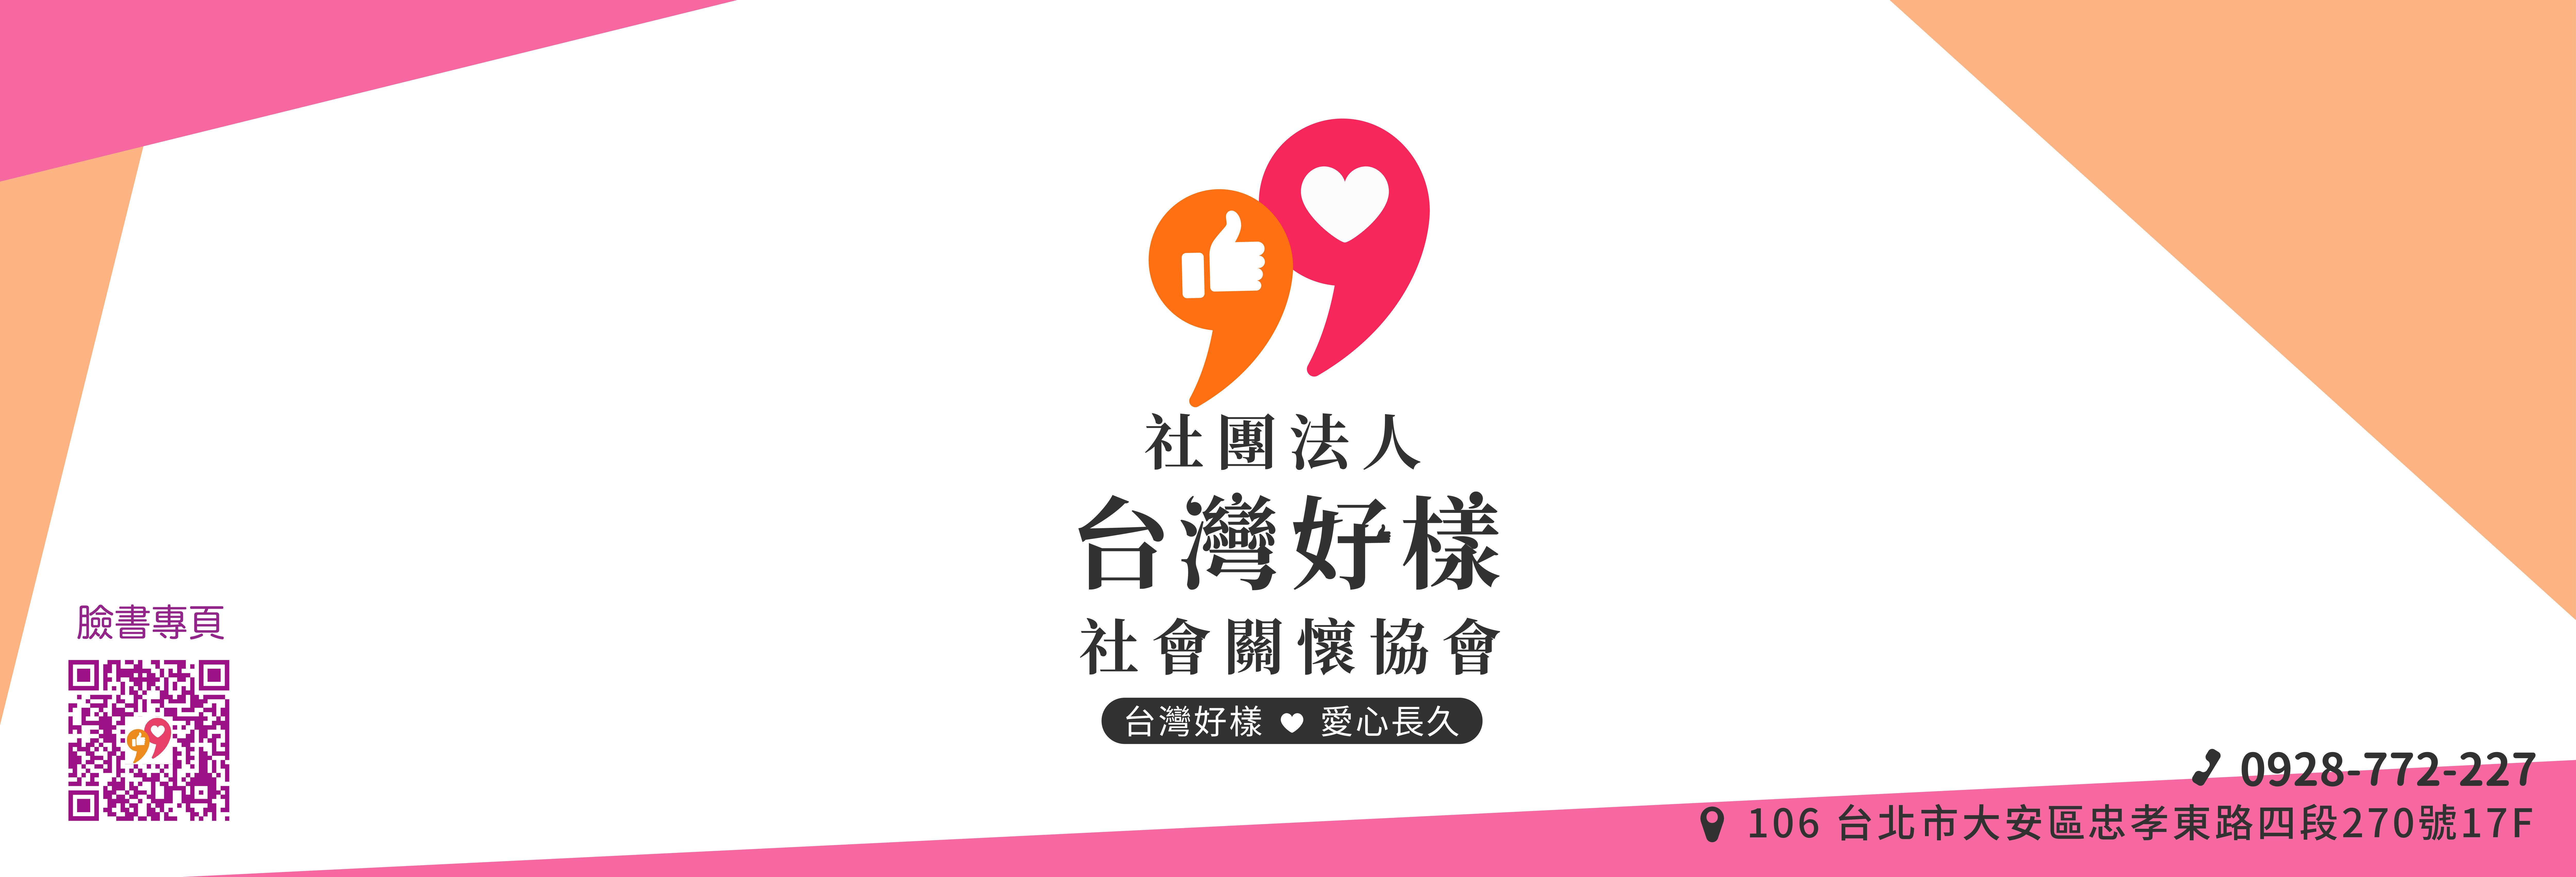 社團法人台灣好樣社會關懷協會-募款活動